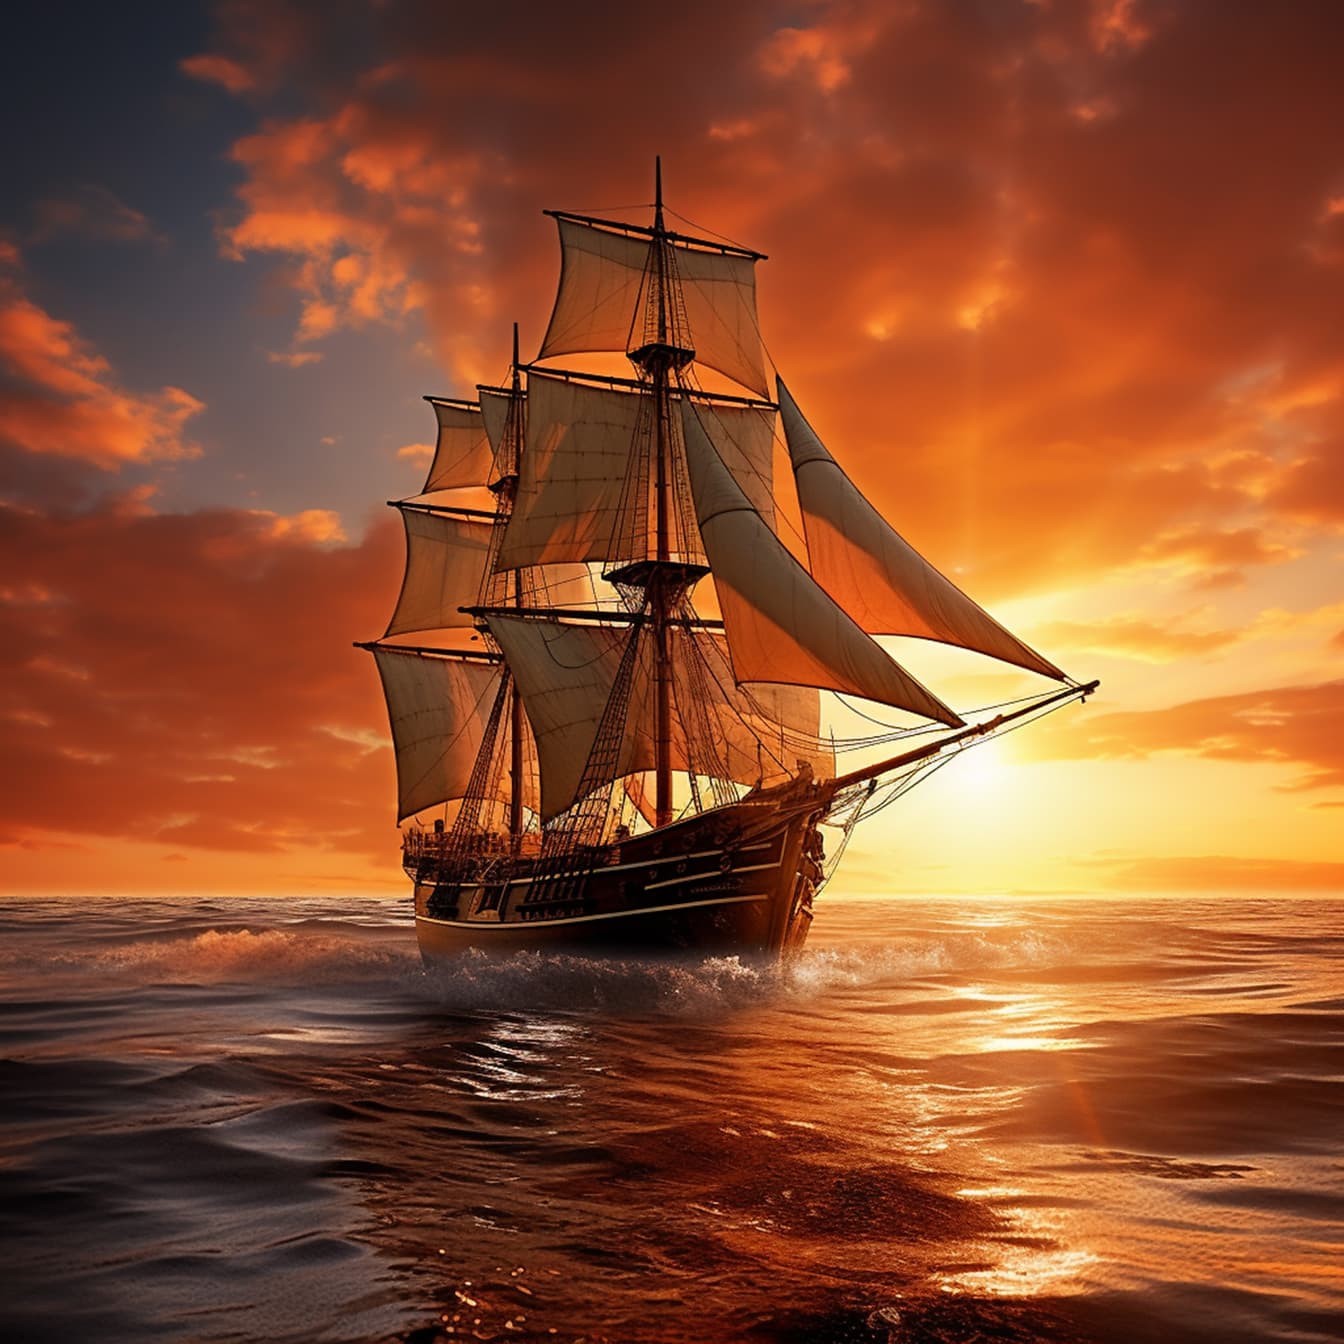 Dramatik gün batımı arka planı ile okyanus dalgaları üzerinde eski tarz yelkenli gemi